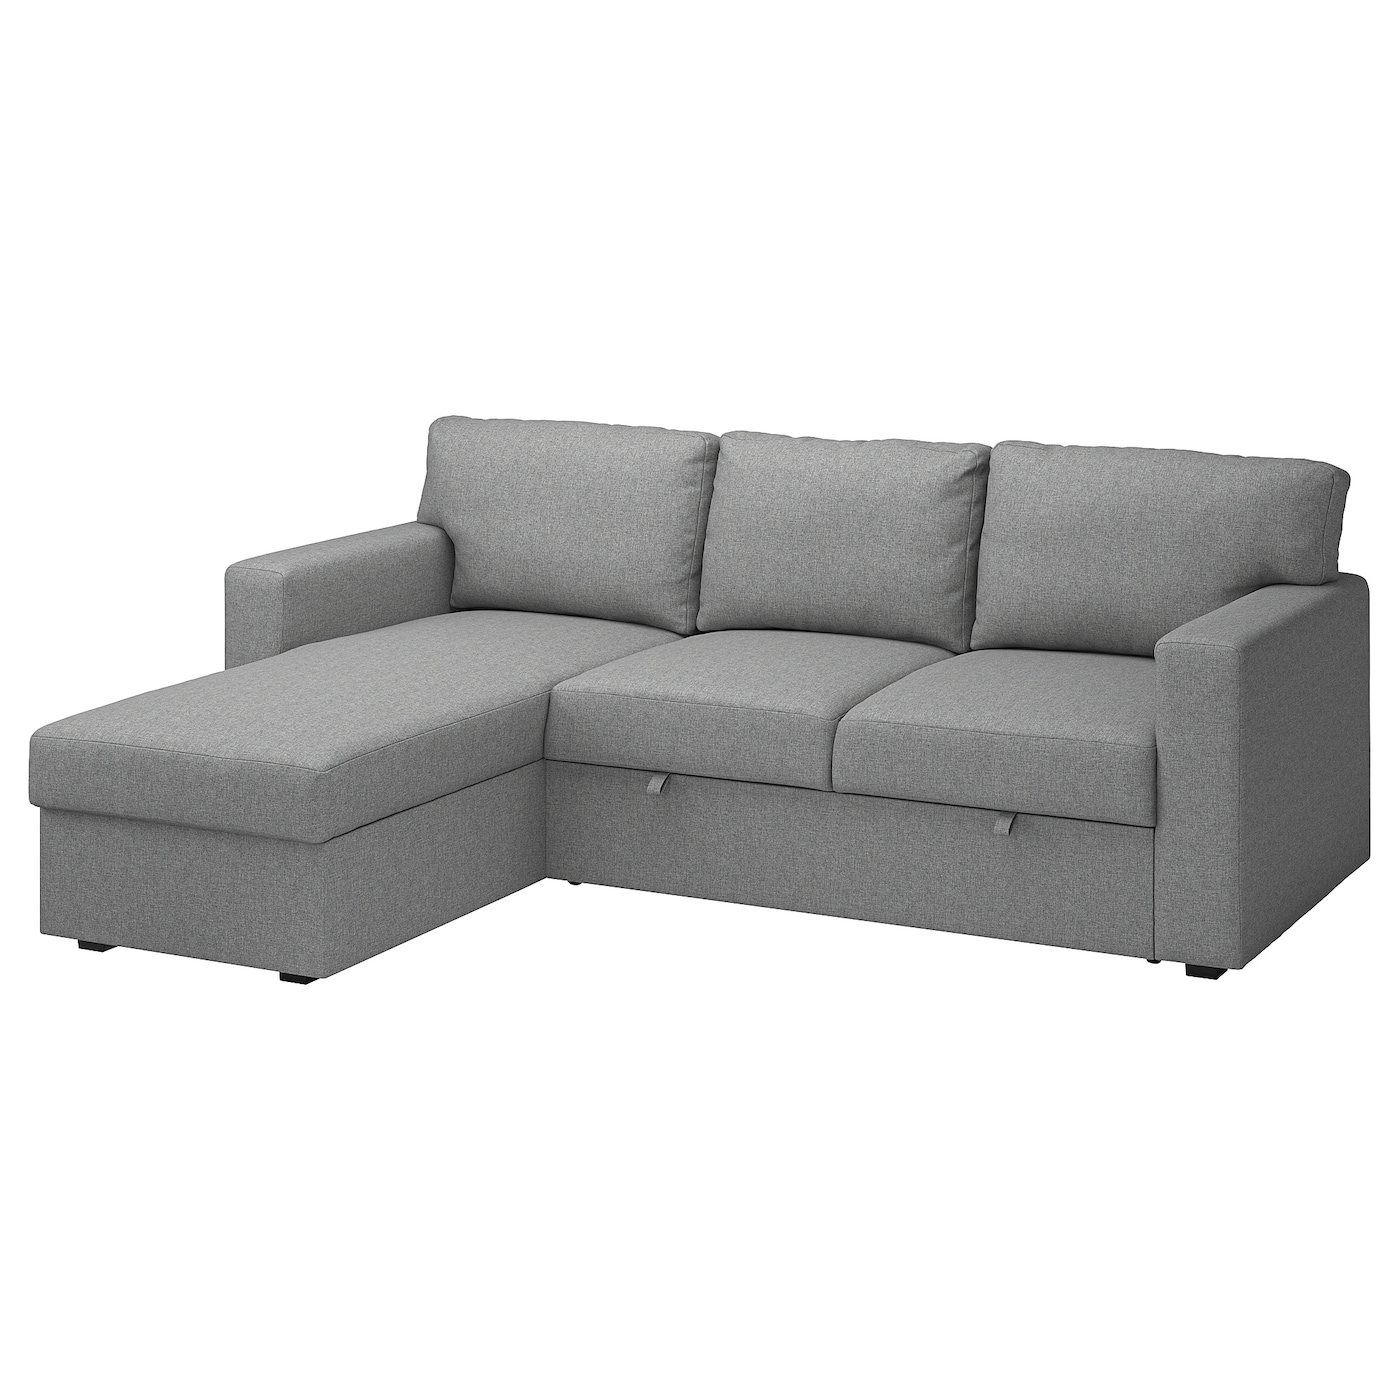 БОРСЛОВ 3-местный диван-кровать + диван, Тибблби бежевый/серый BÅRSLÖV IKEA диван кровать ramart design дарем оптима titanium 921 moire blue